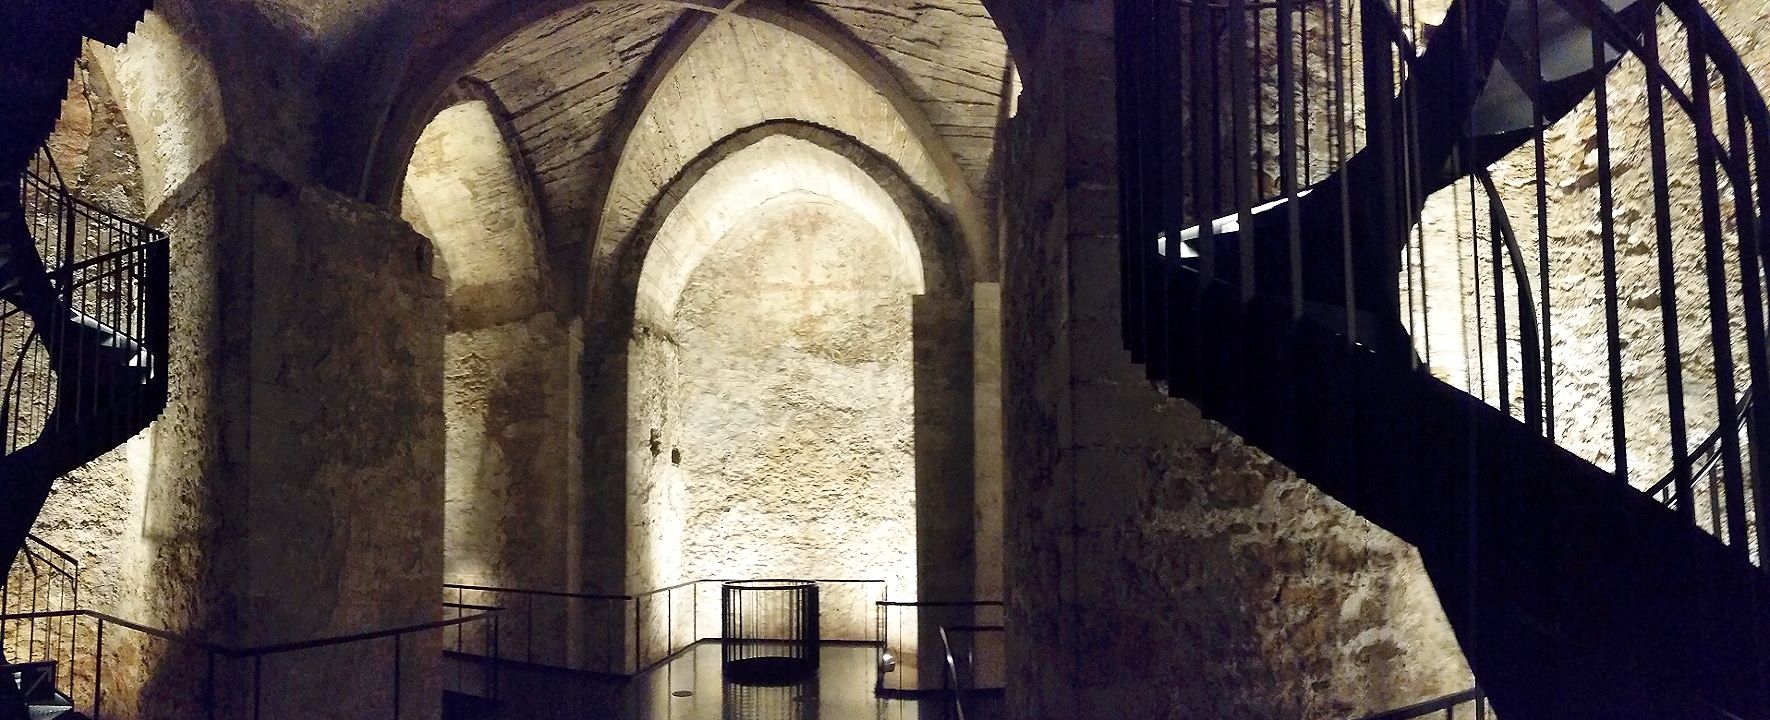 Virgilkapelle aus 1240